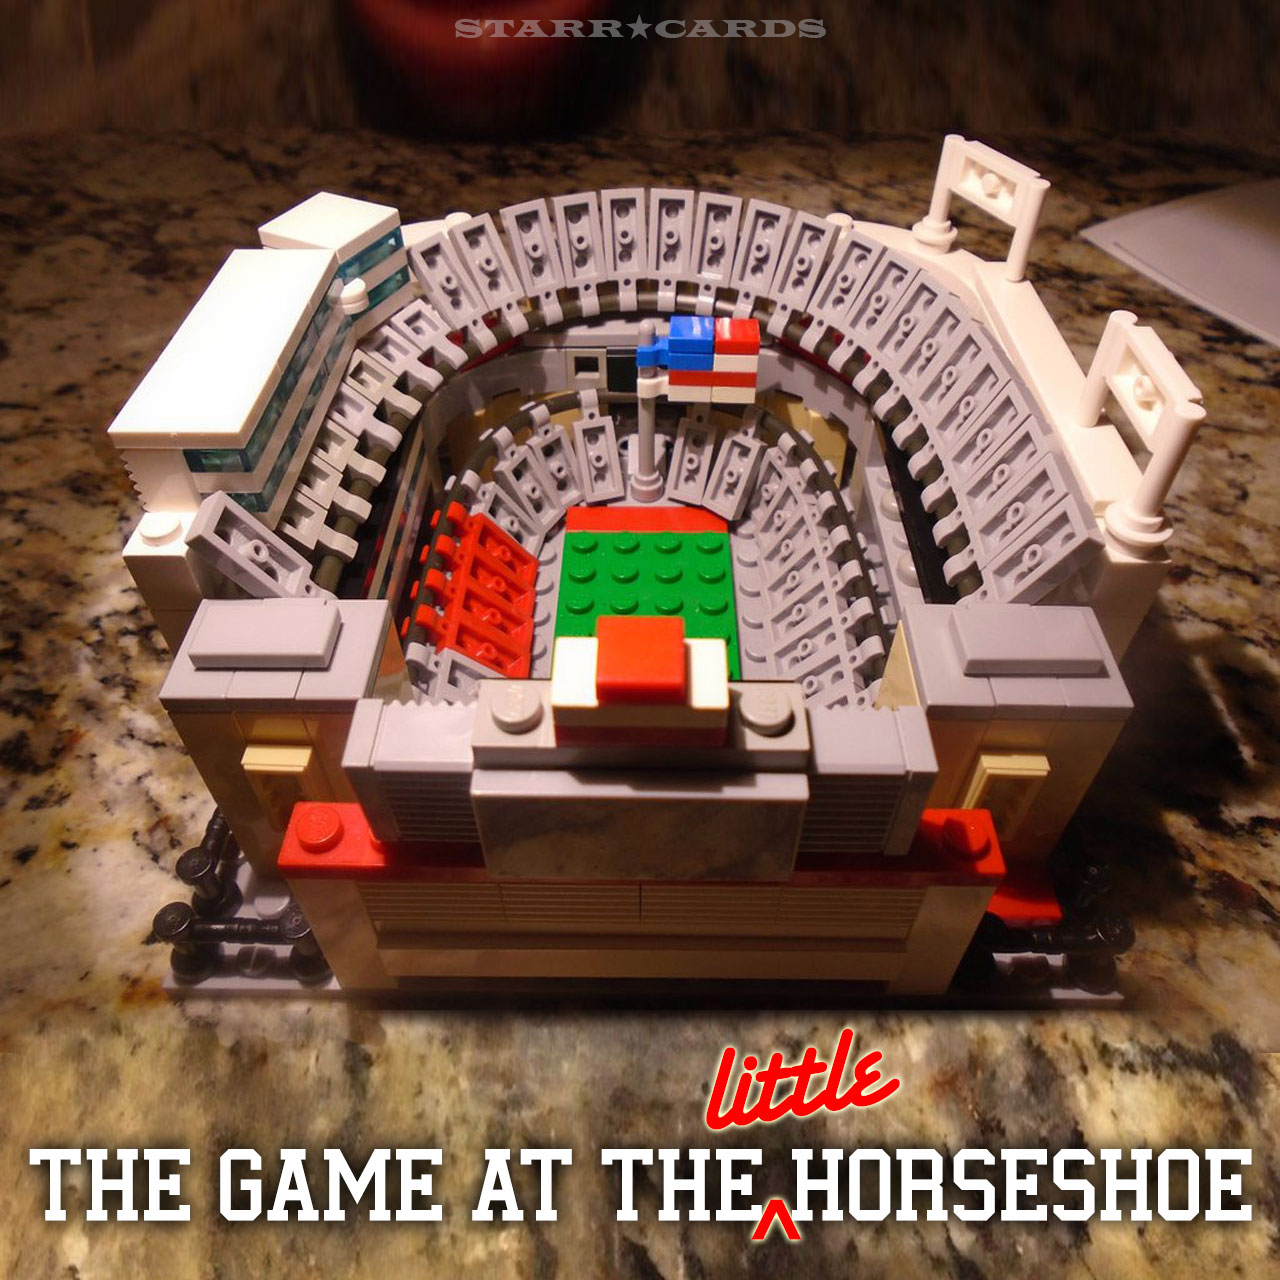 Get your Lego stadium ahead of Michigan-Ohio State game